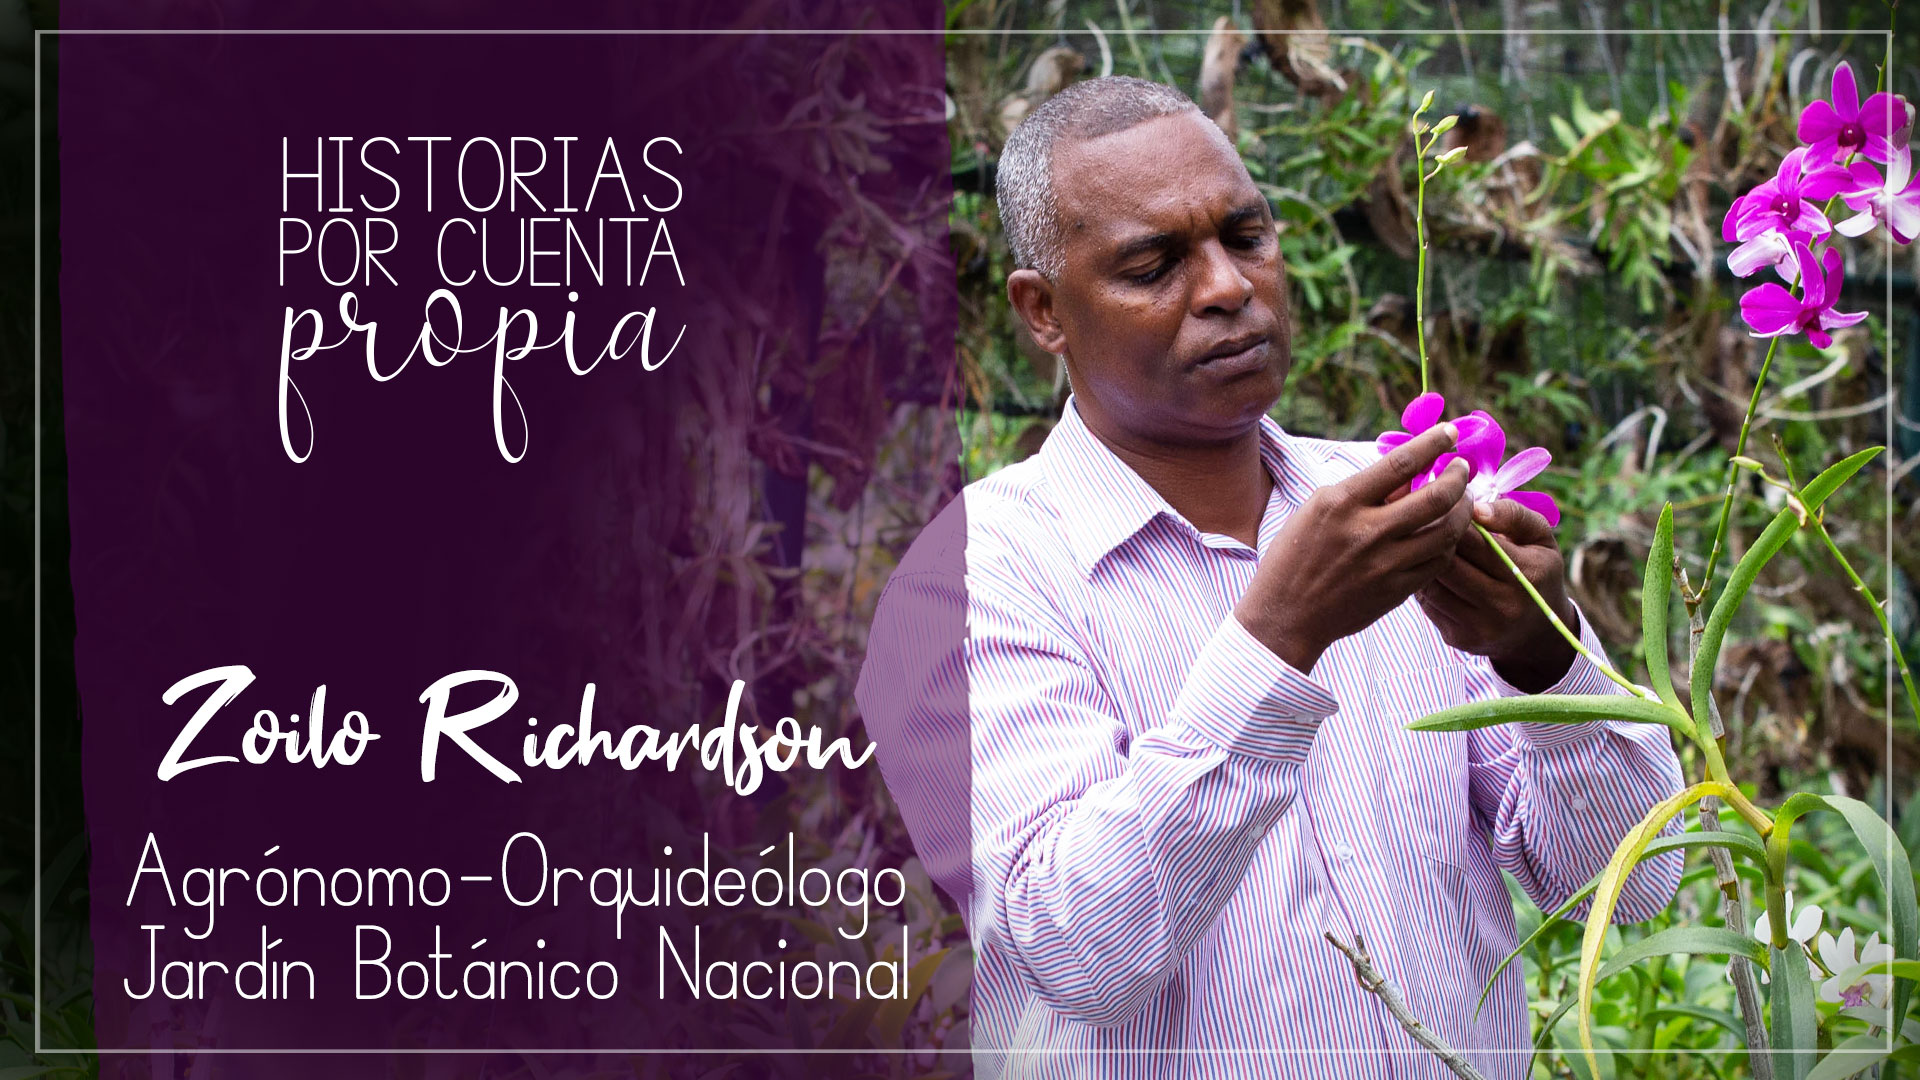 REPÚBLICA DOMINICANA: ¿Sabías que en RD tenemos 350 especies endémicas de orquídeas? Además, una reserva científica y un precioso orquideario.